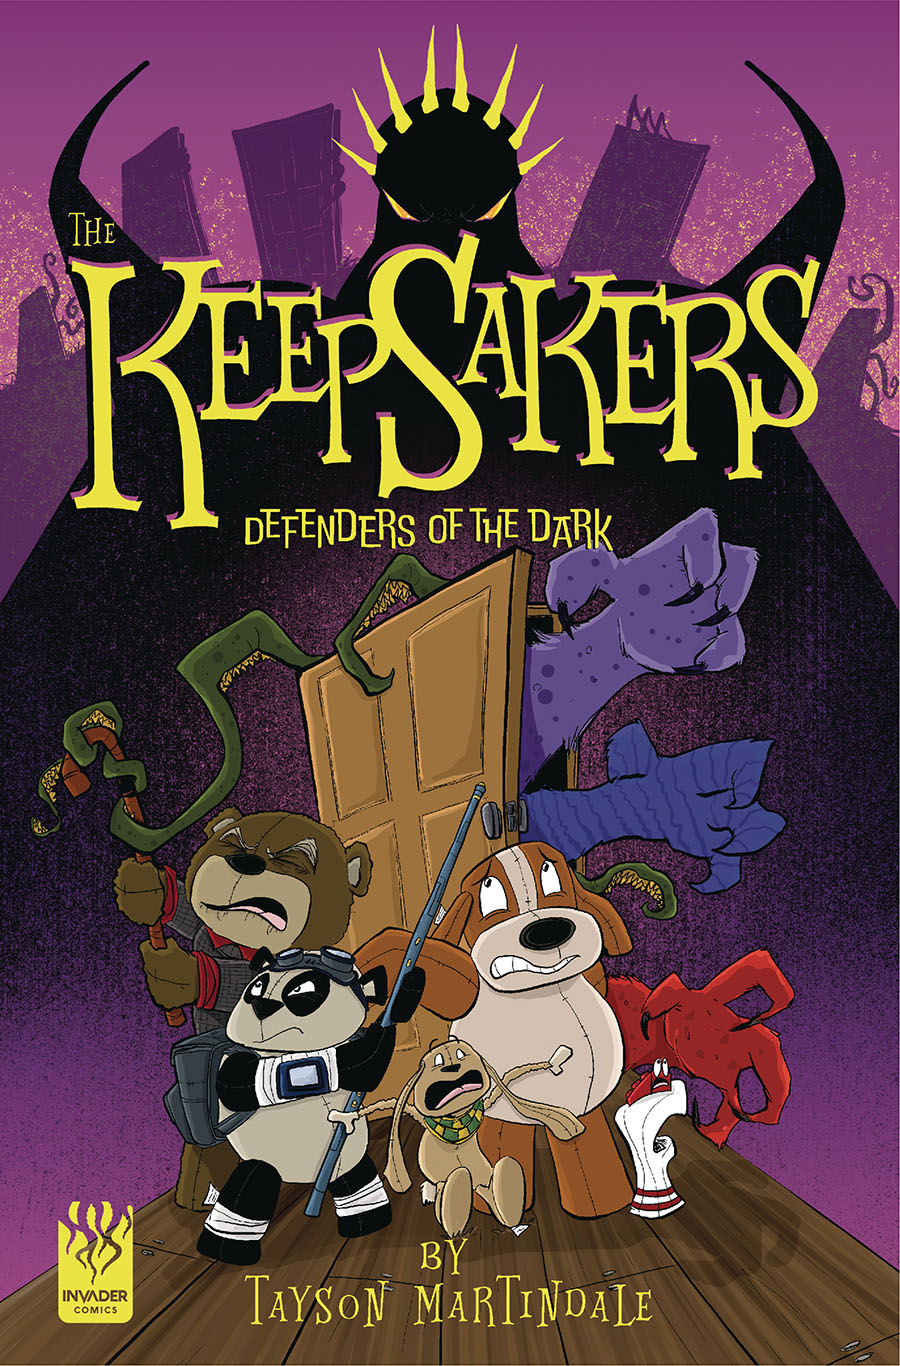 Keepsakers Defenders Of The Dark GN